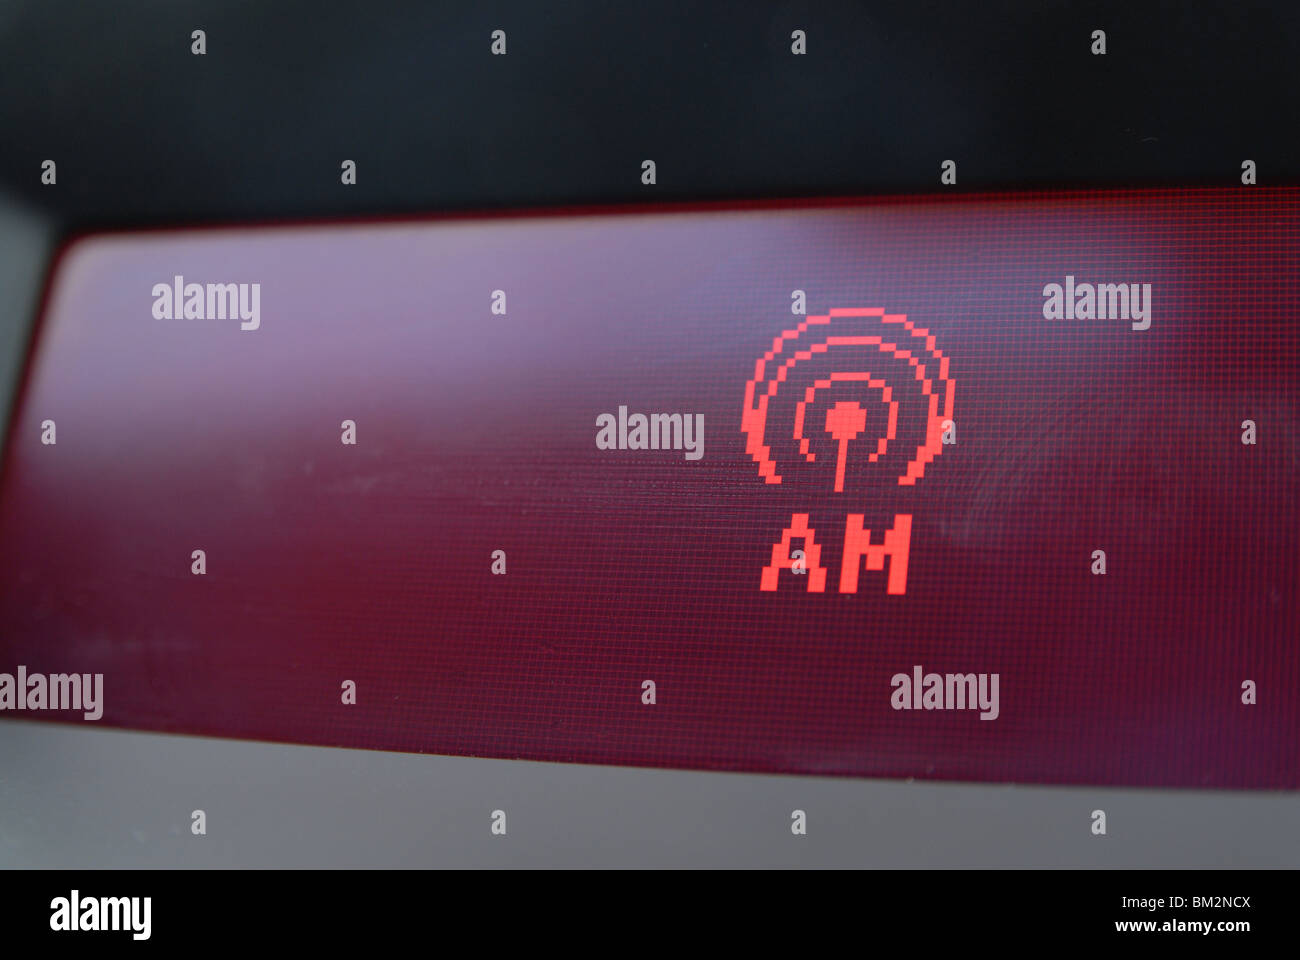 Indicateur de fréquence radio AM sur une voiture, l'affichage de la radio  Photo Stock - Alamy